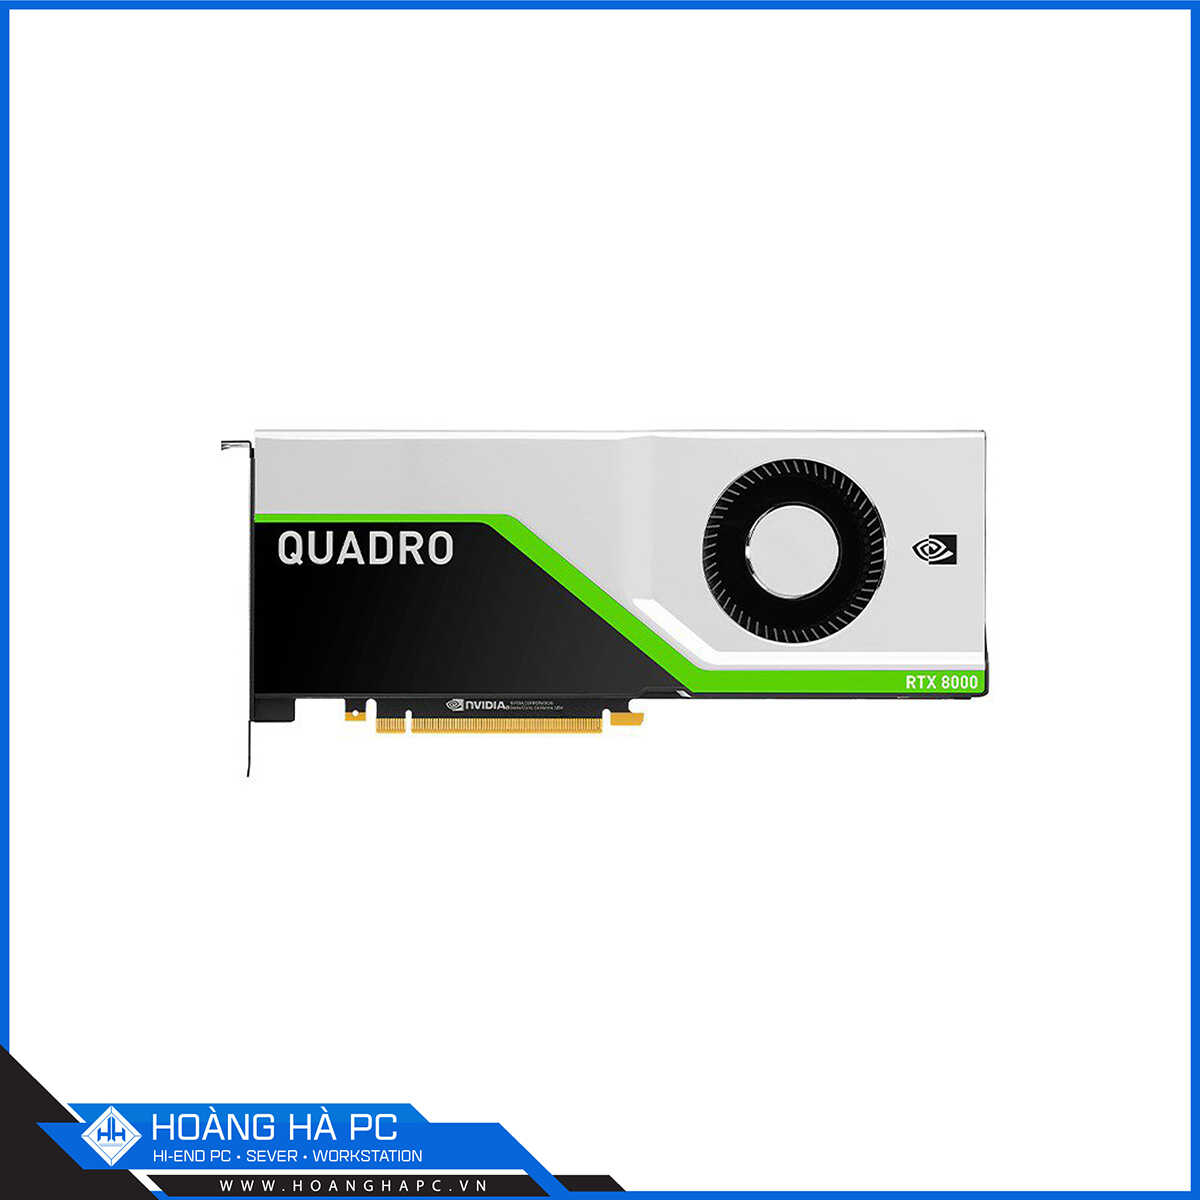 Nvidia Quadro RTX 8000 48GB (48GB GDDR6, 384-bit, DP, 1x8-pin, 1x6-pin)